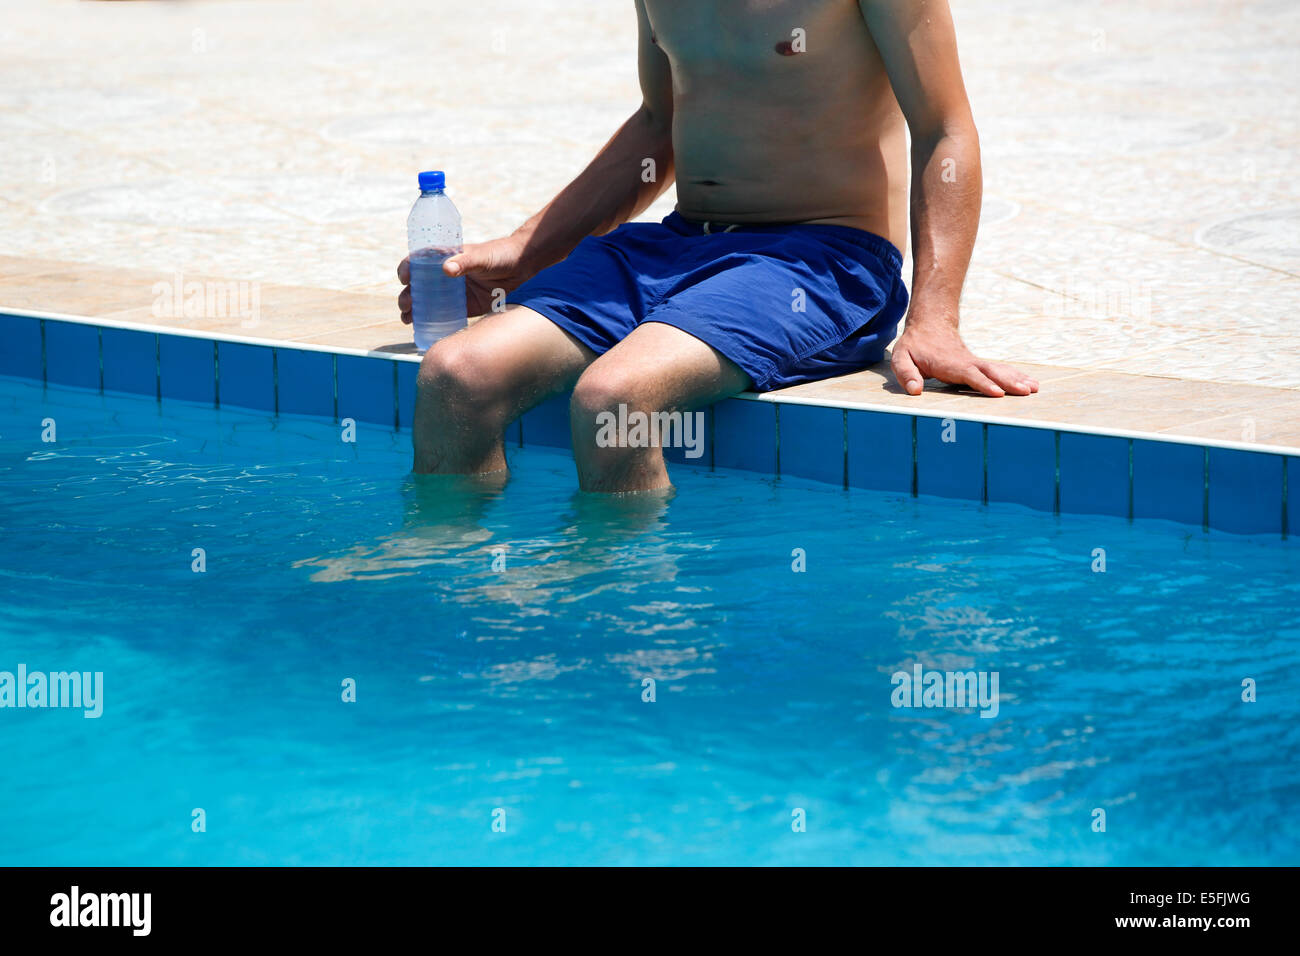 Attraktiver Mann mit blauen Badeanzug und eine Flasche Wasser genießt Sonne in einem Schwimmbad Stockfoto